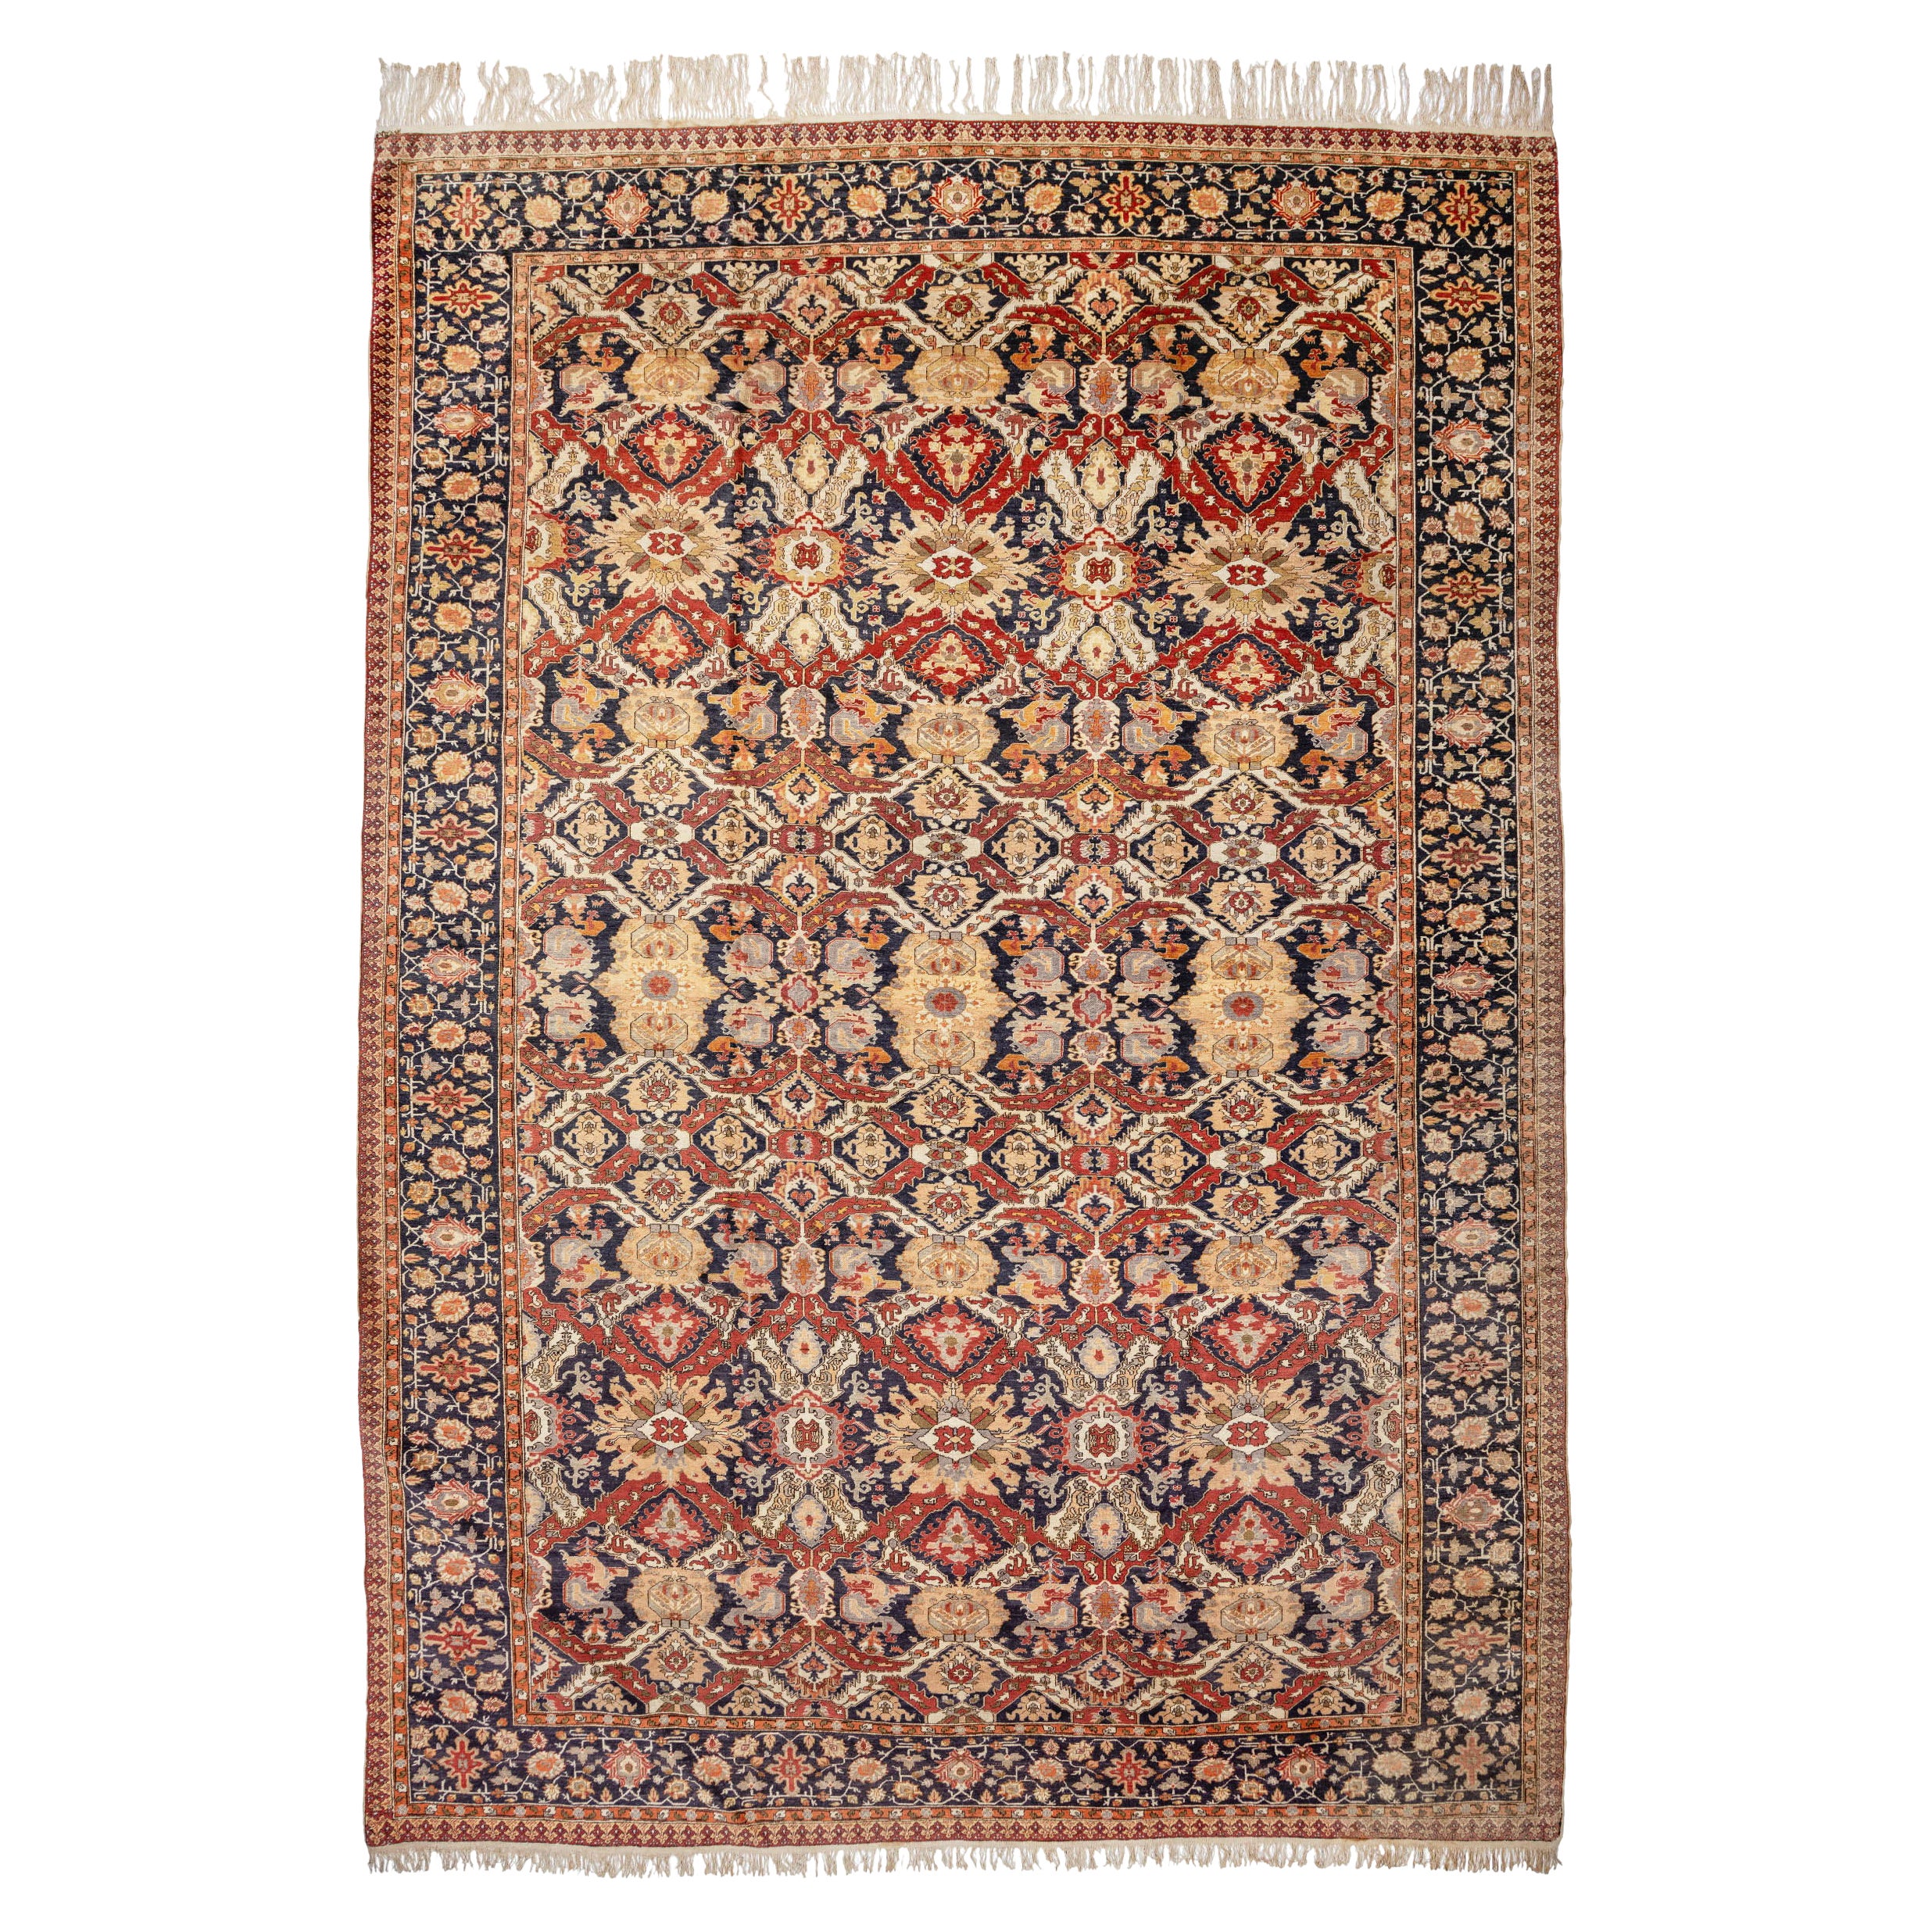 Antique Large Turkish Kayseri Carpet, c. 1900 For Sale